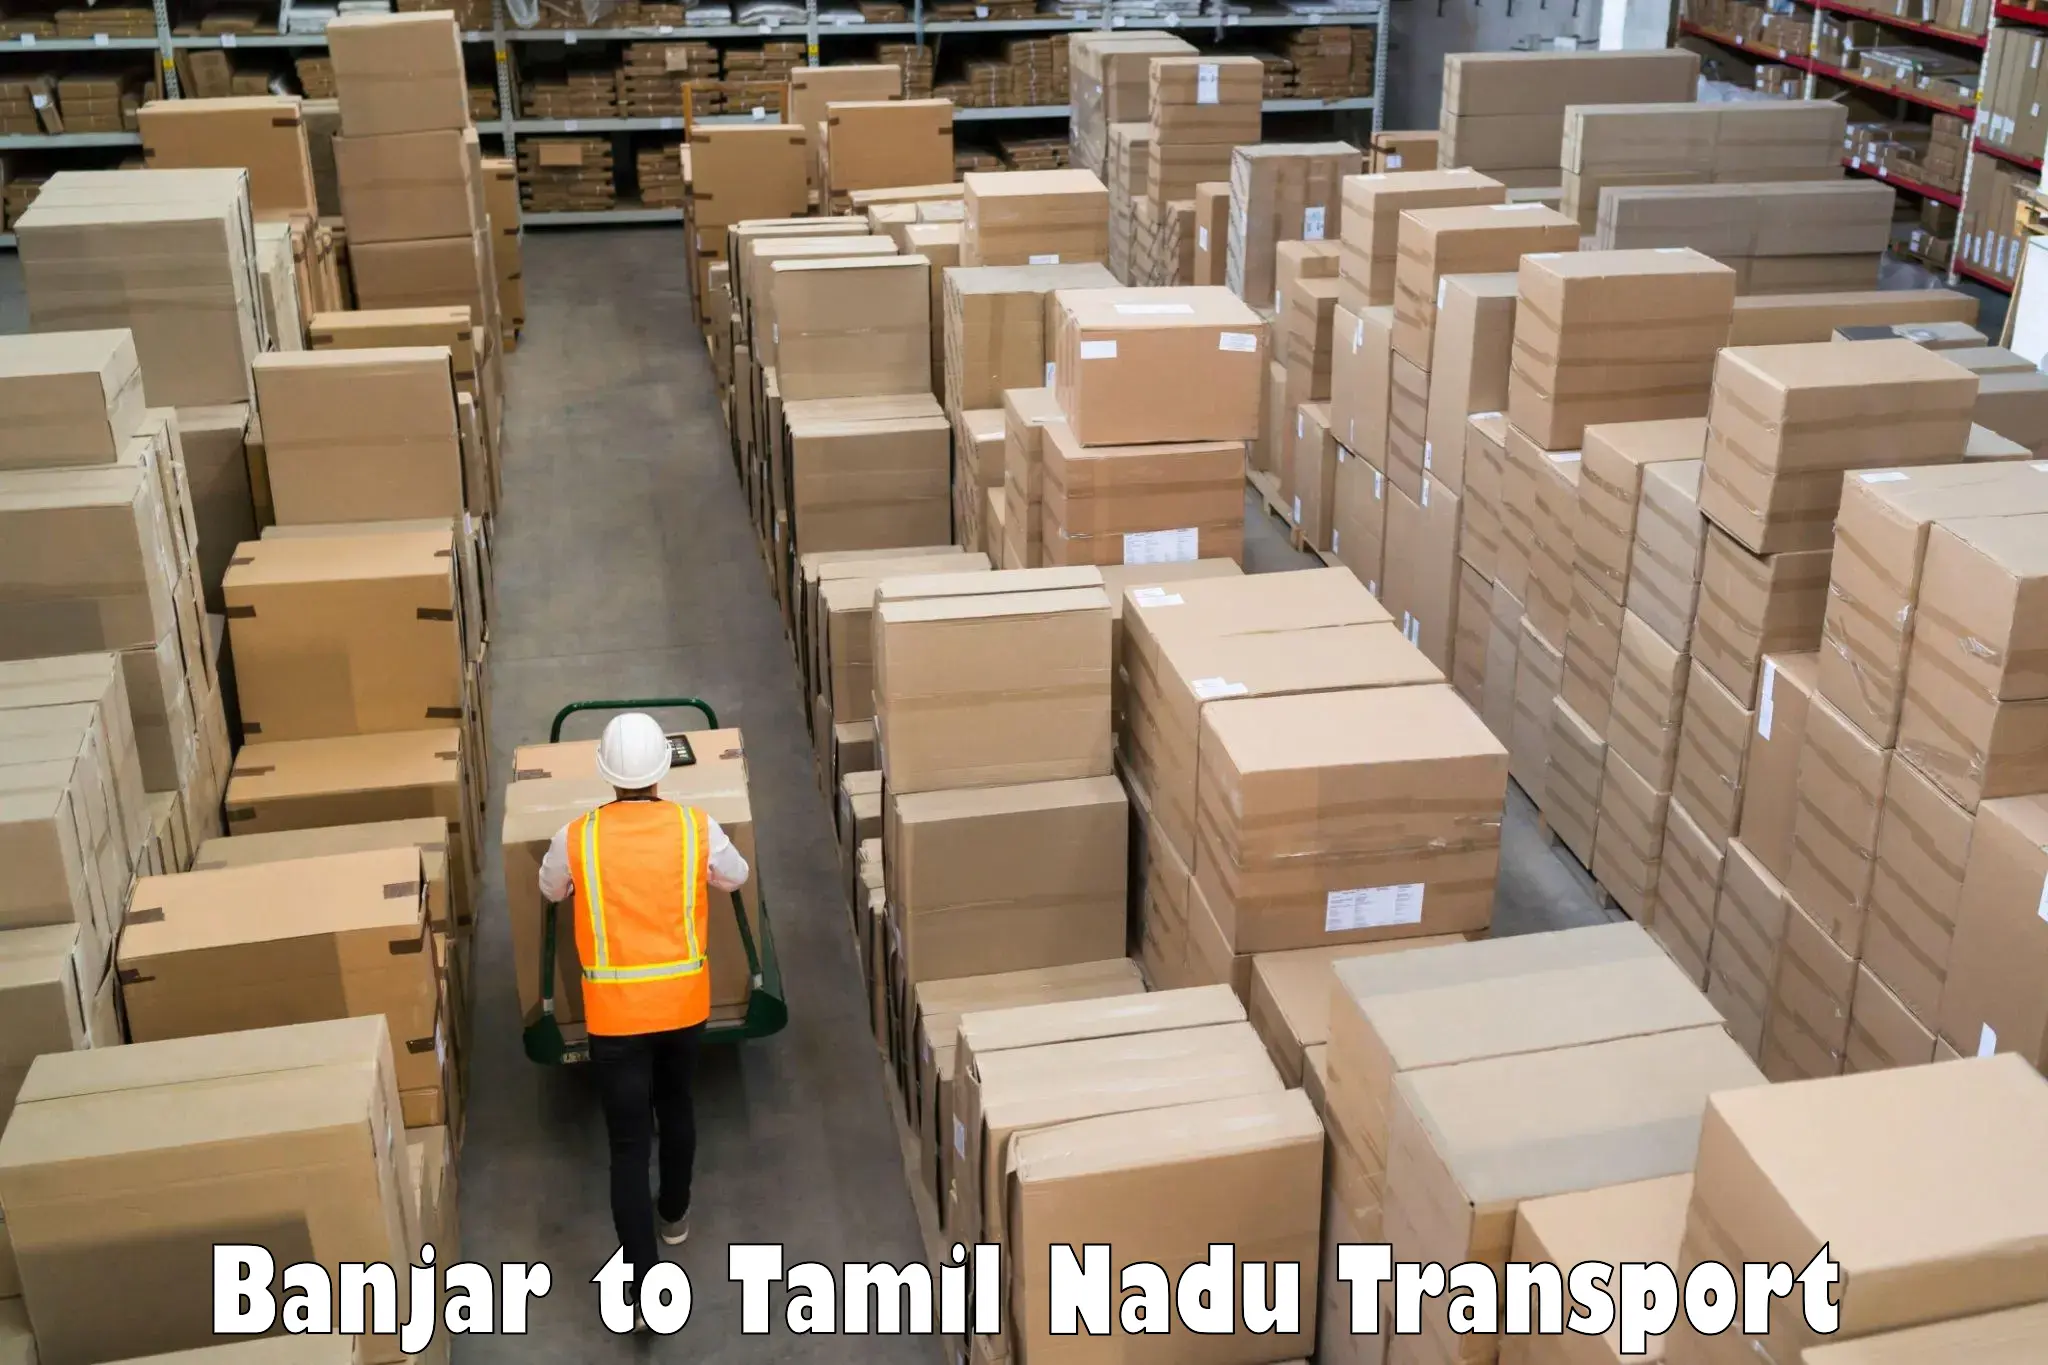 Road transport online services Banjar to Tirupattur